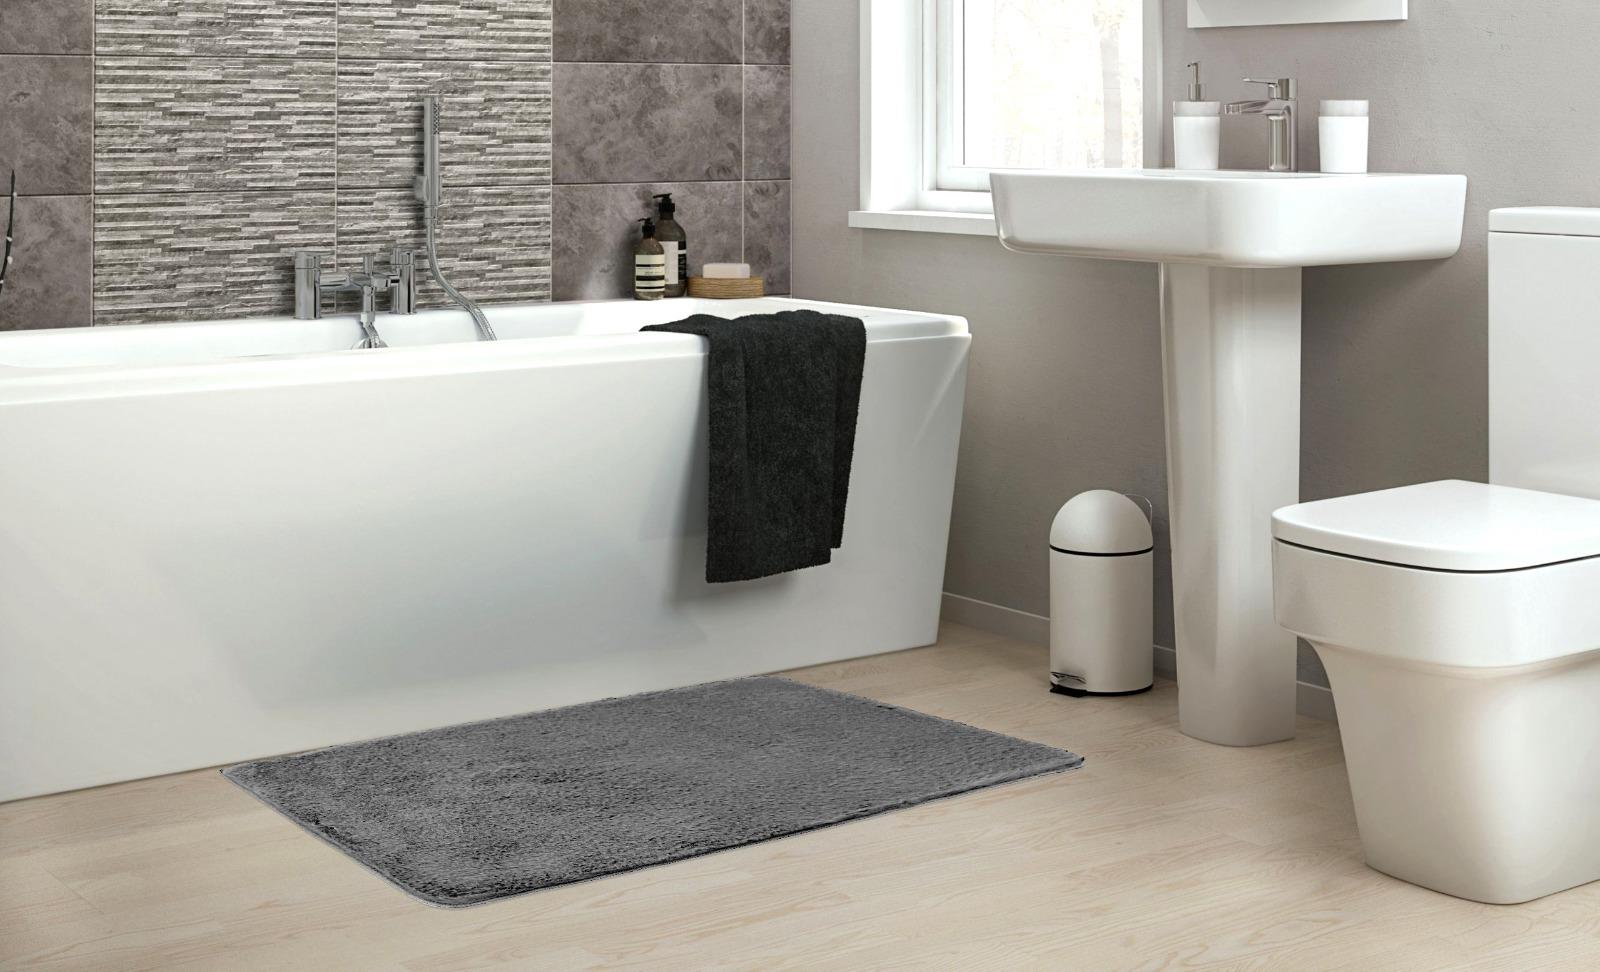 שטיח אמבטיה אפור כהה דגם Soft סופט - נעים במיוחד!